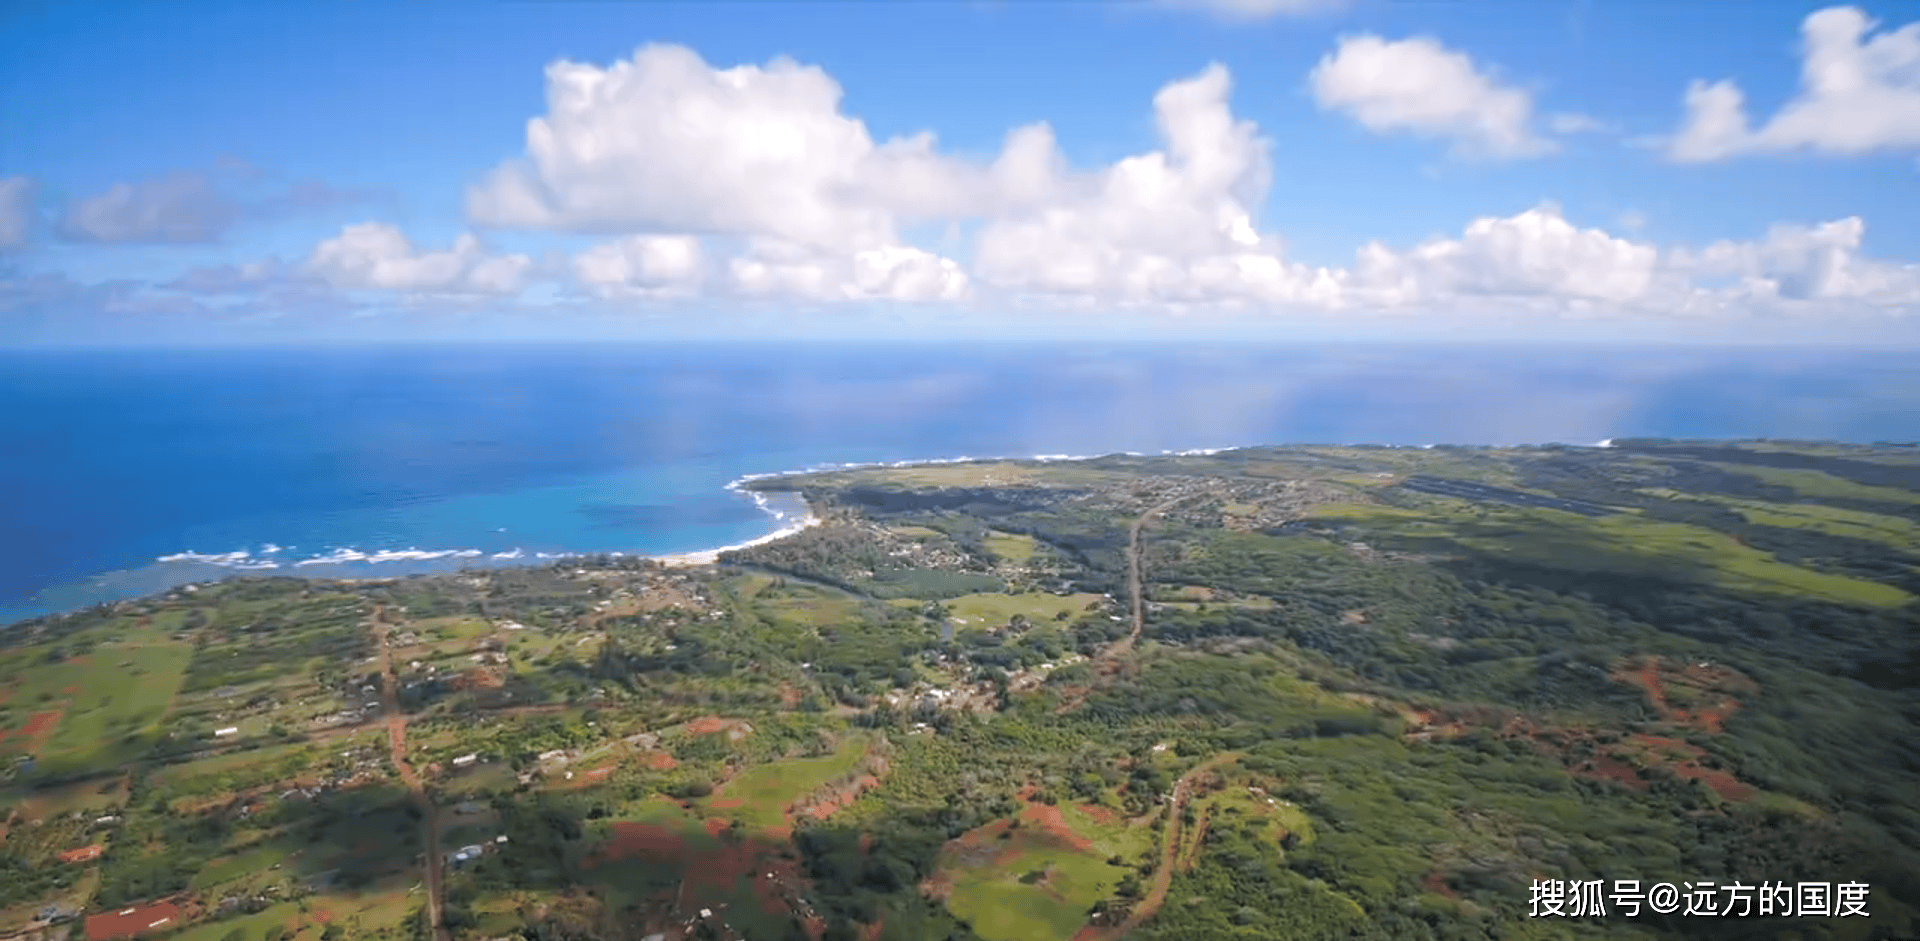   夏威夷可爱的岛屿:天堂的缩影